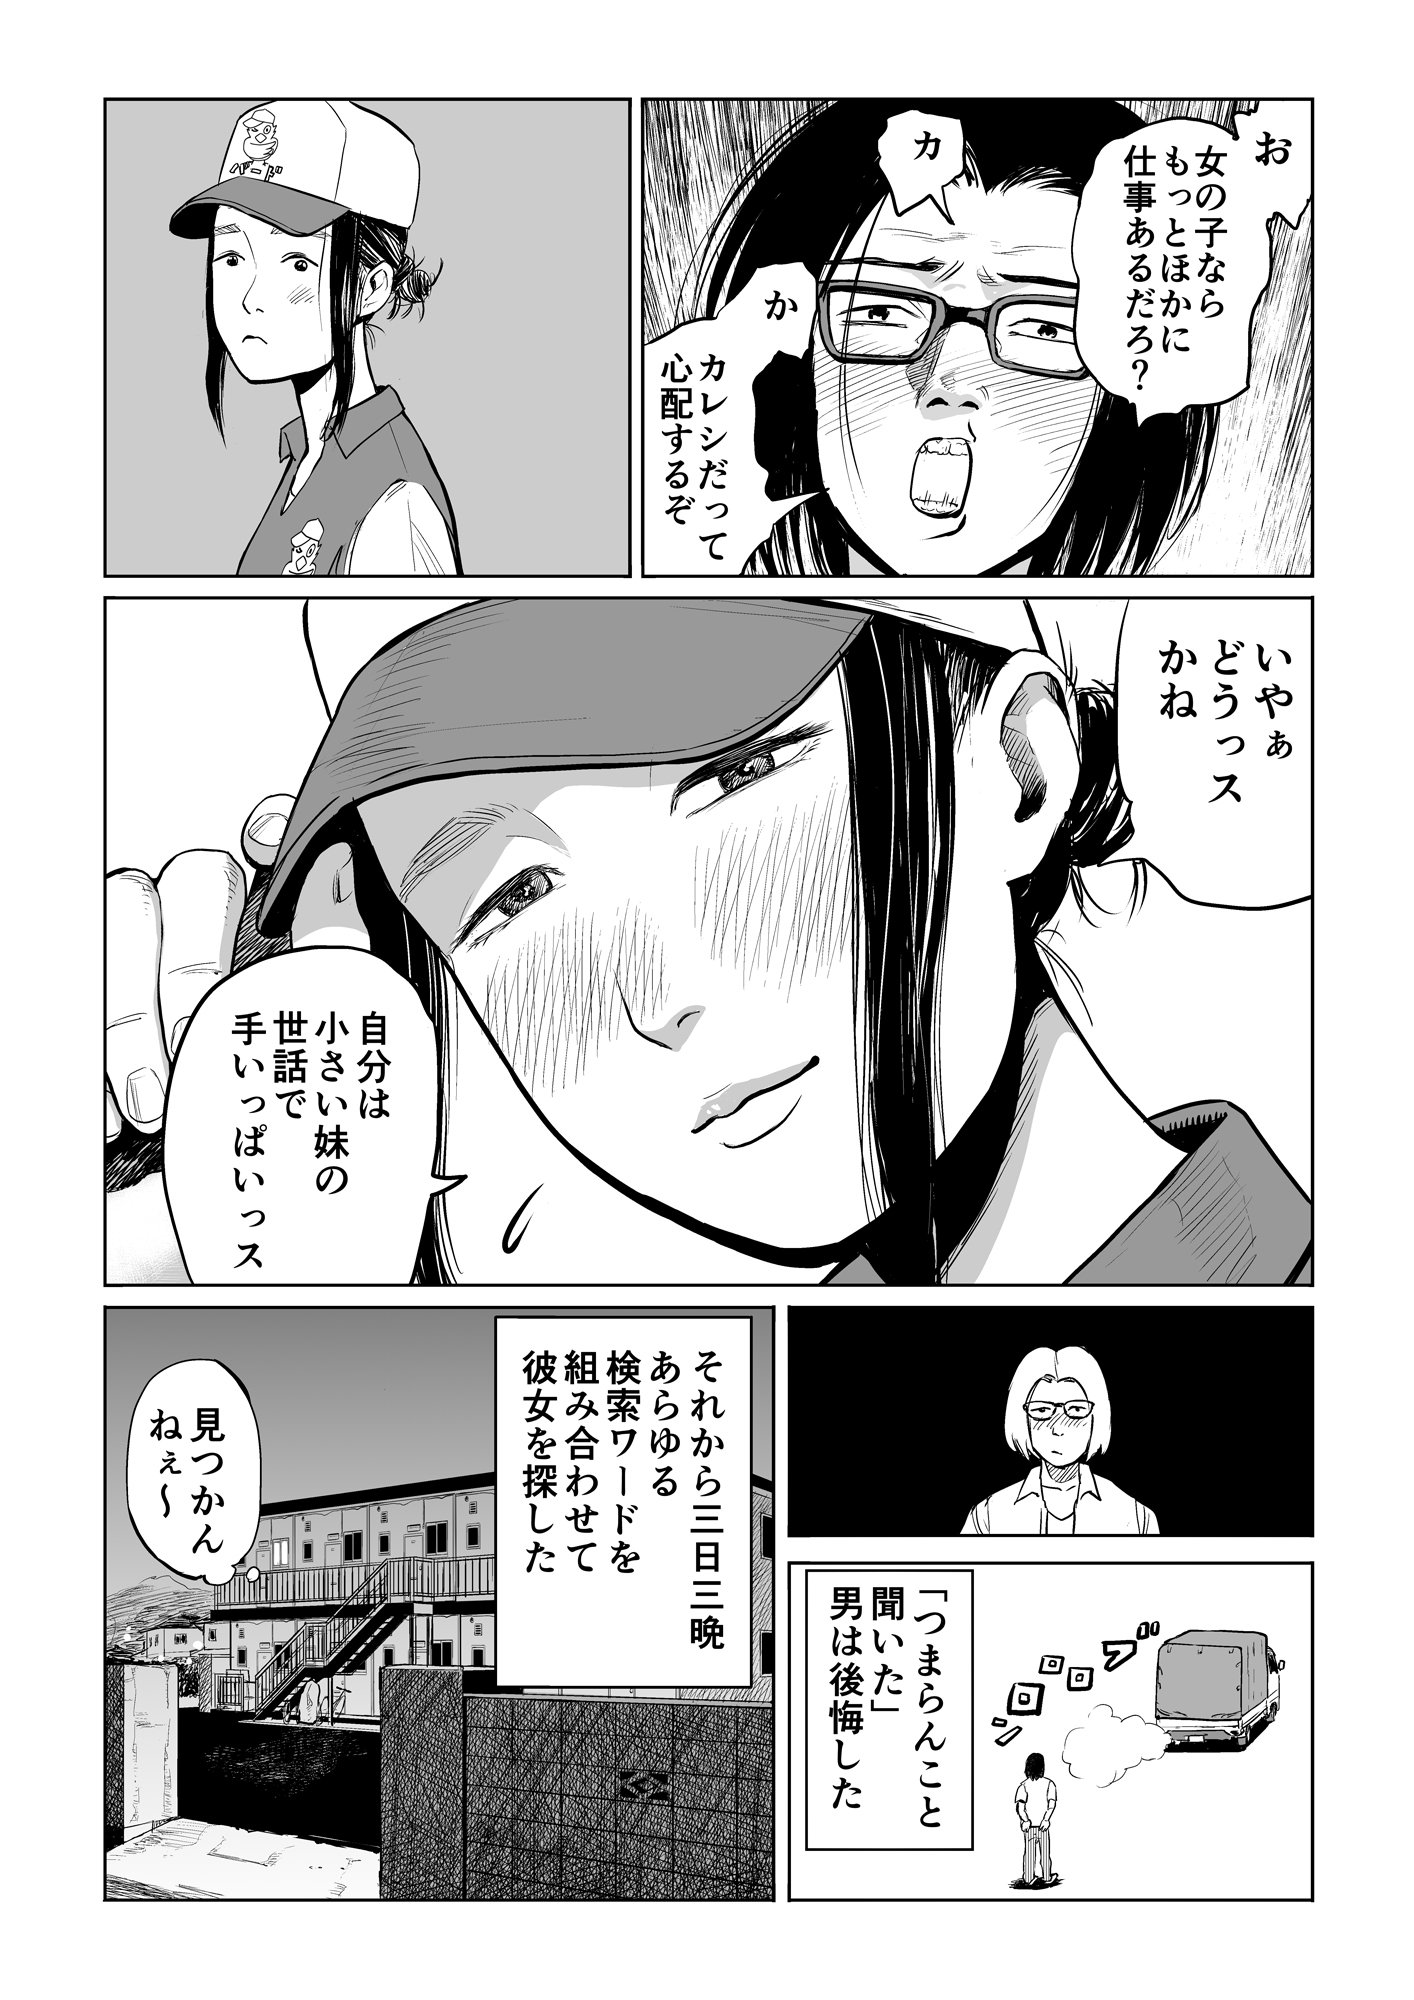 宮野オンド Auf Twitter なかなかありえない引っ越しの４p漫画を描きました 例えばこんなお引越し Manga Comic マンガ 漫画 T Co Afxfypbmap Twitter